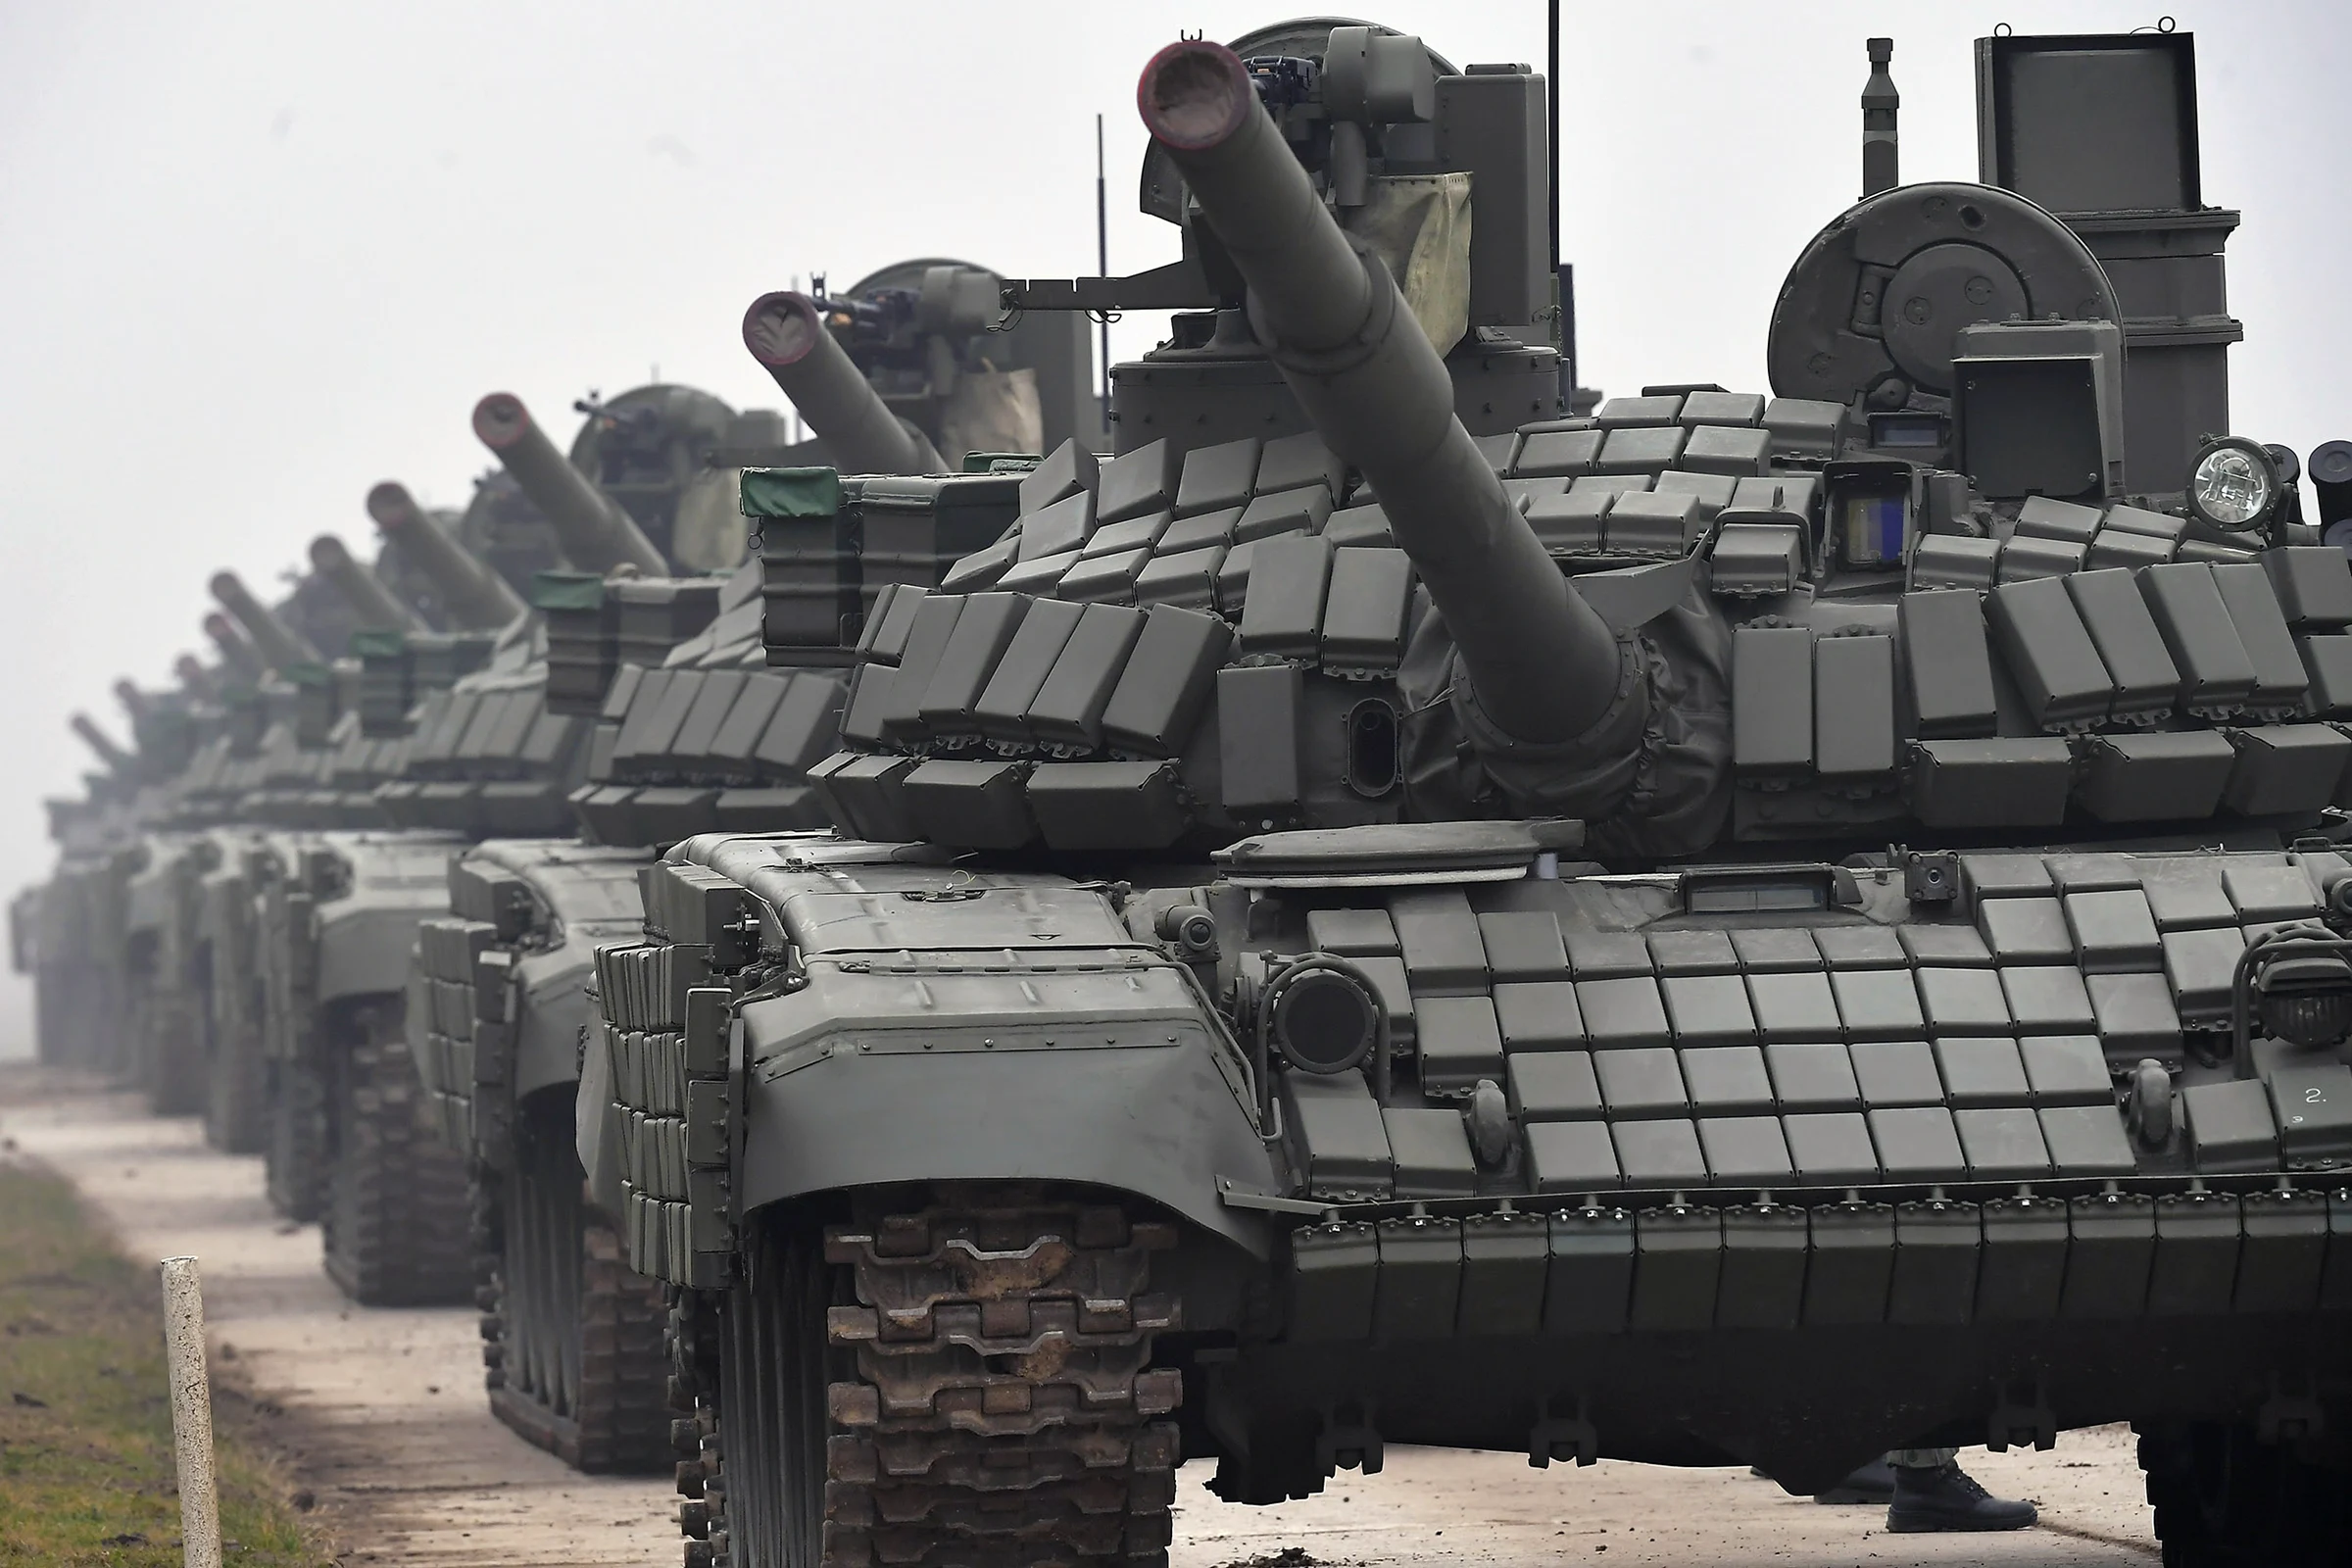 Rusia adquiere 770 Tanques T-62 y T-90M mejorados